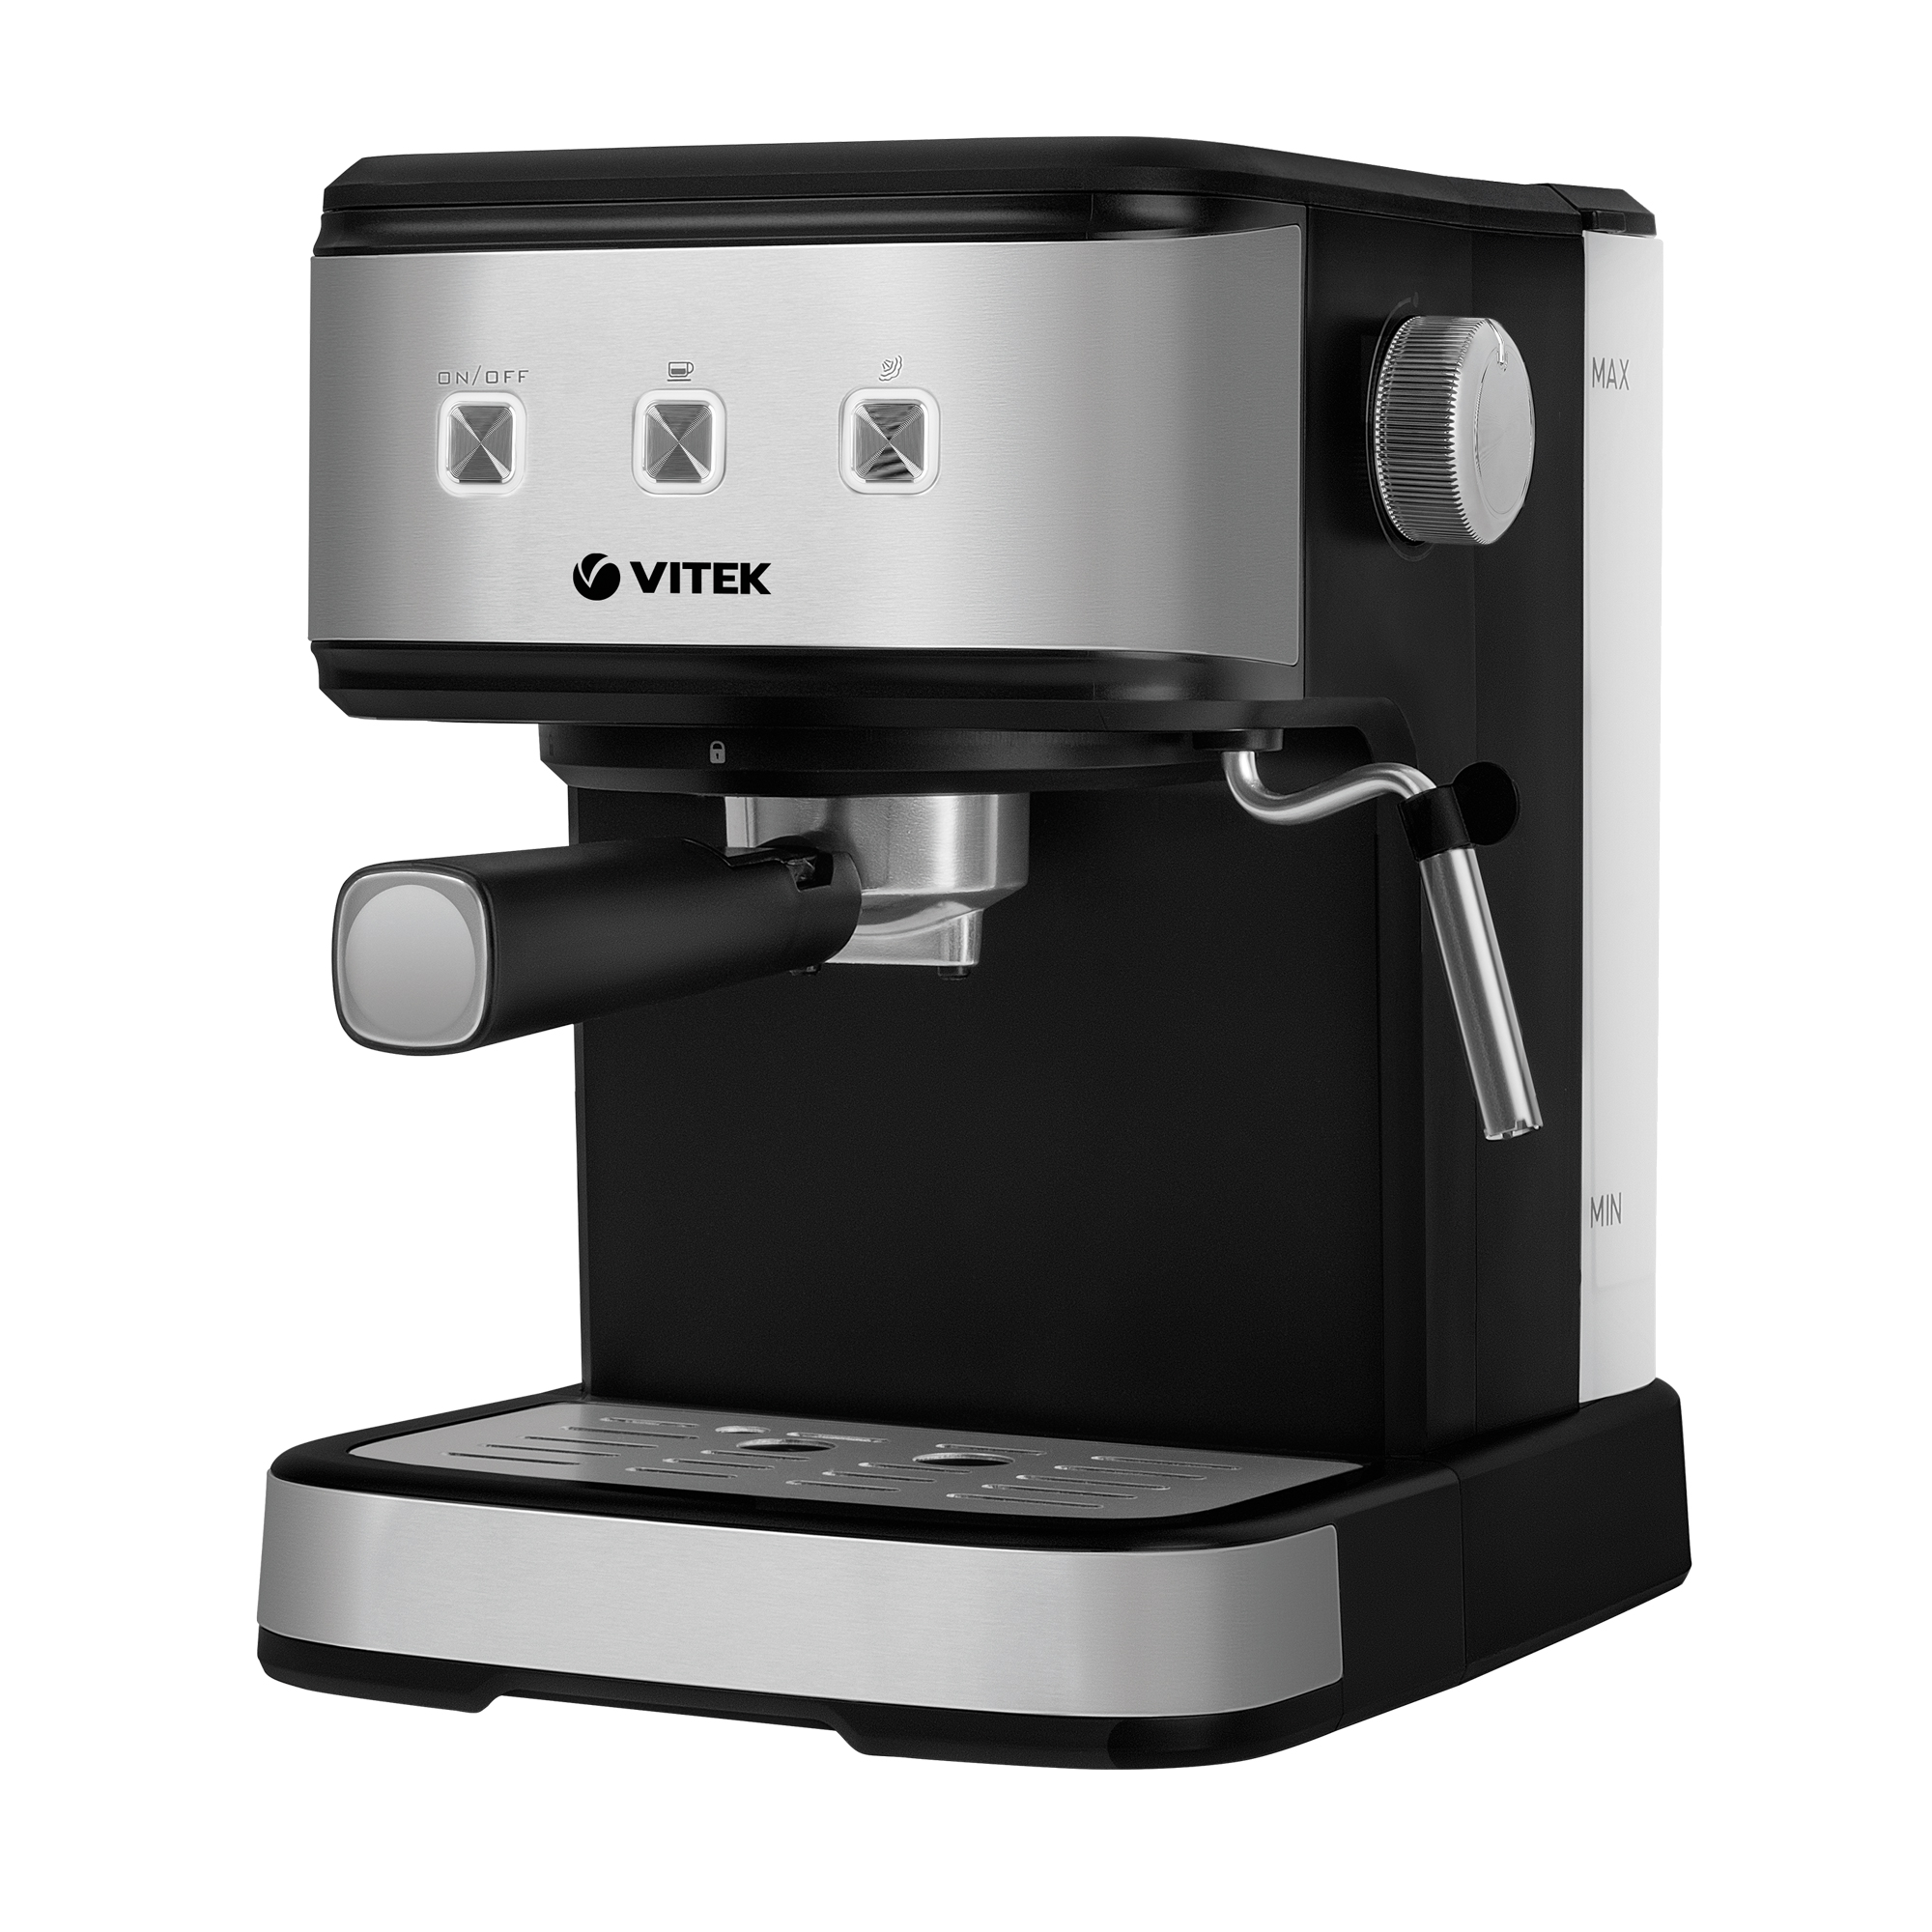 Рожковая кофеварка VITEK VT-8471 серый, черный рожковая кофеварка delonghi ec785 gy серый